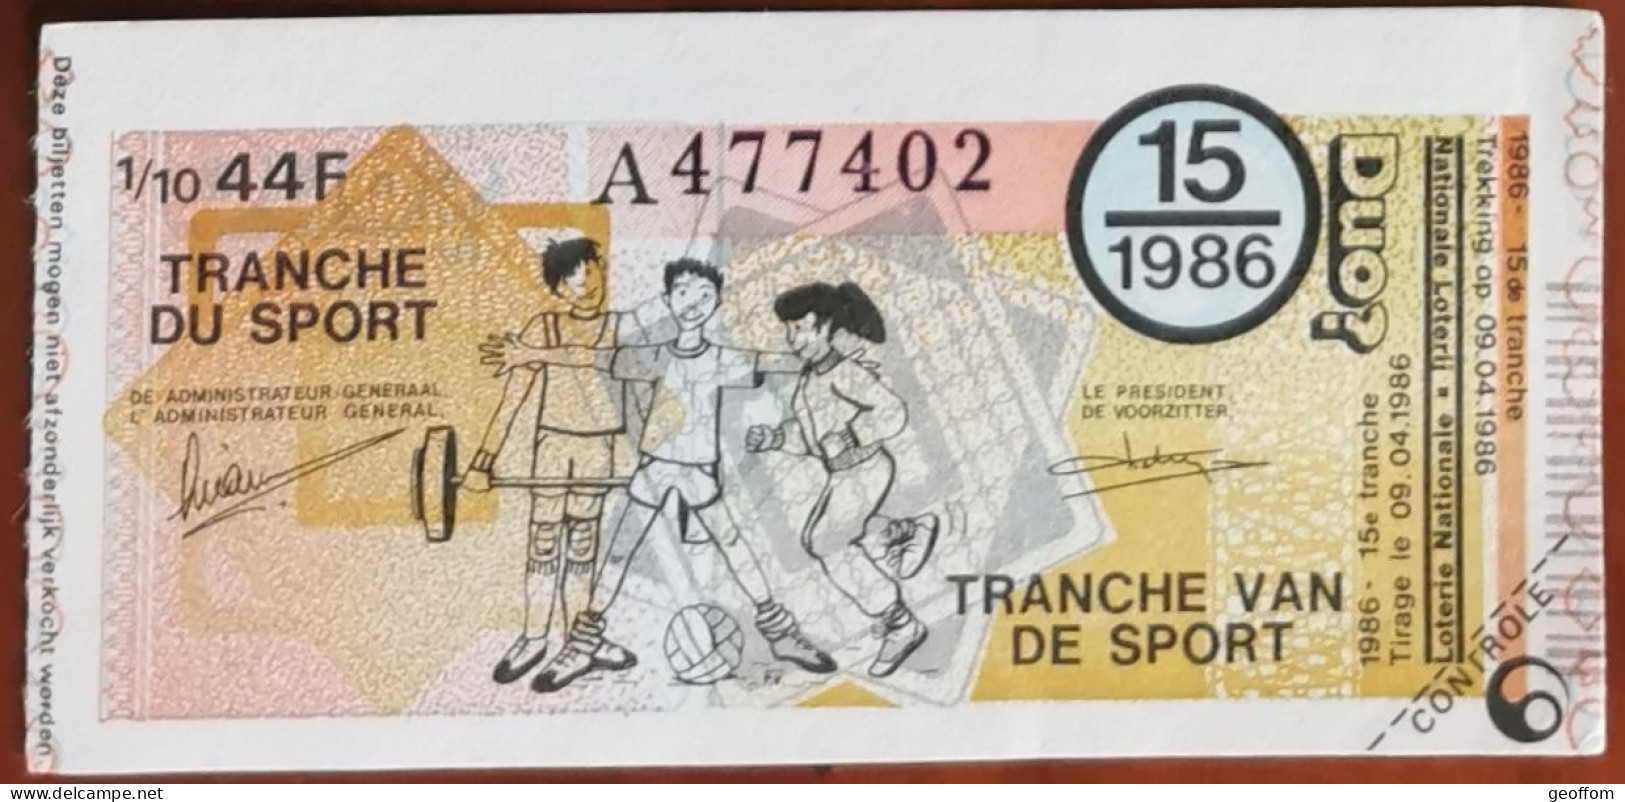 Billet De Loterie Nationale Belgique 1986 15e Tranche Du Sport - 9-4-1986 - Biglietti Della Lotteria